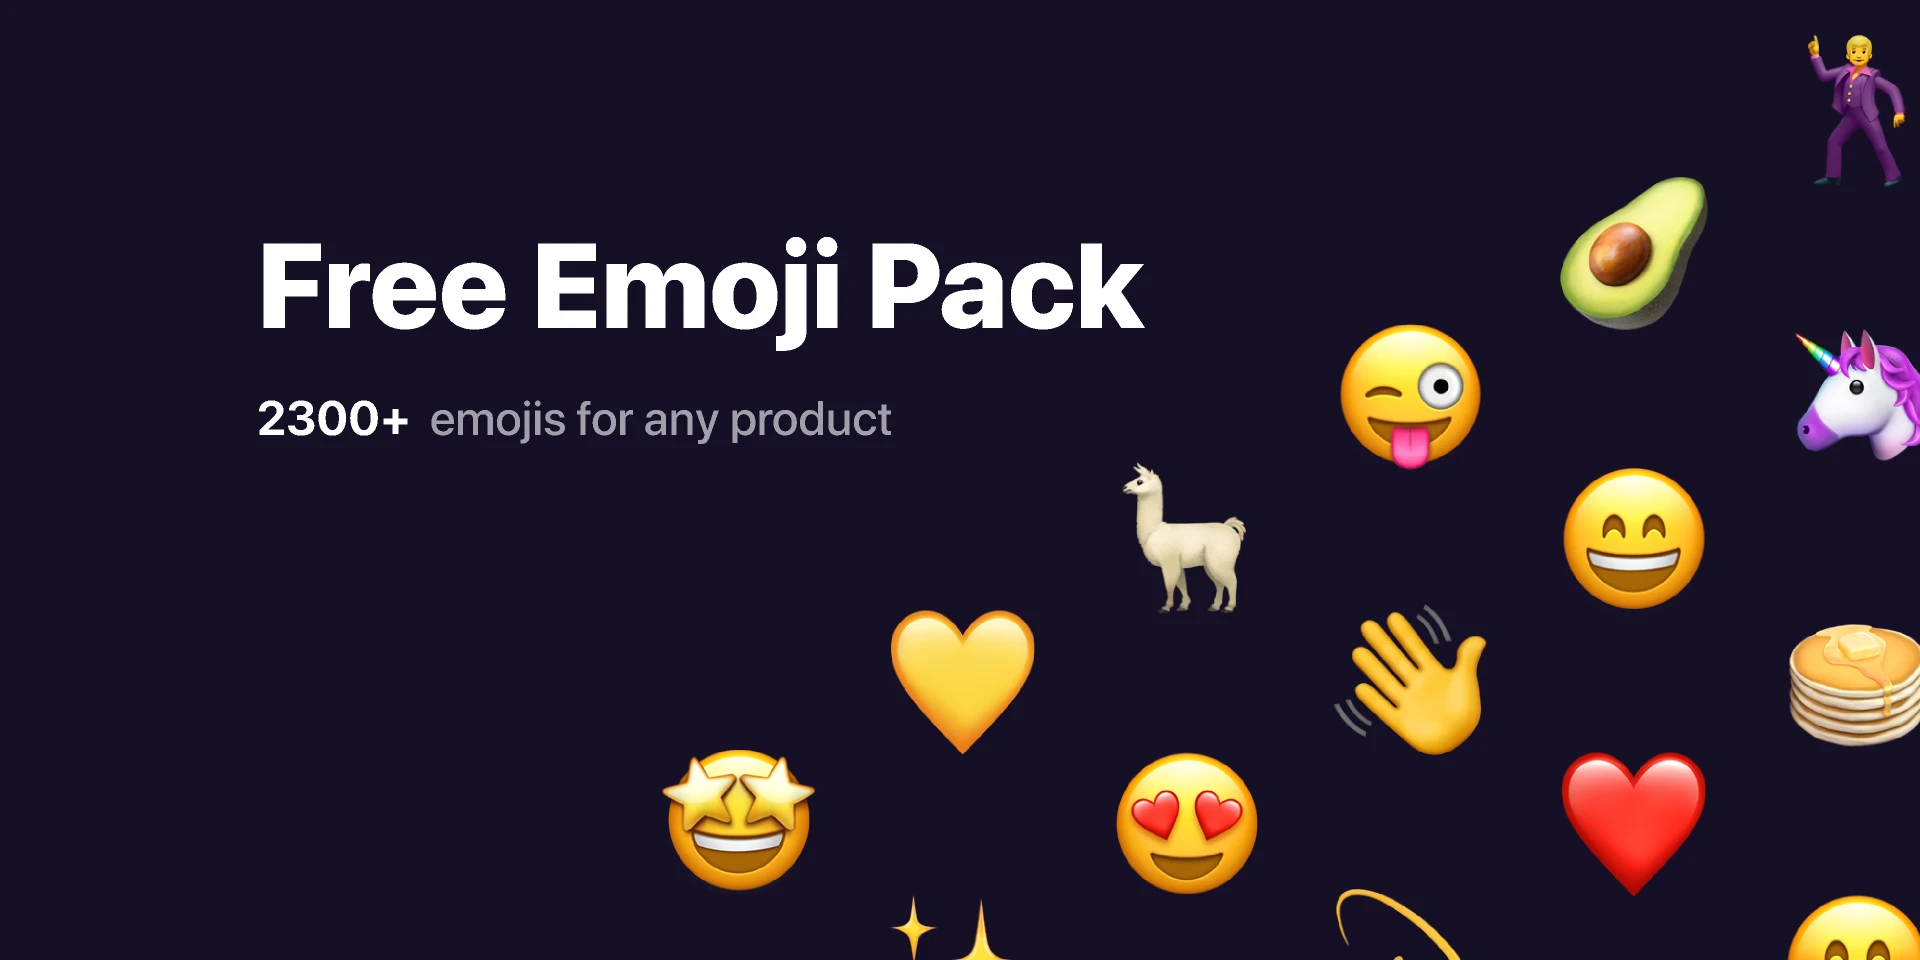 Free Emoji Pack for Figma and Adobe XD